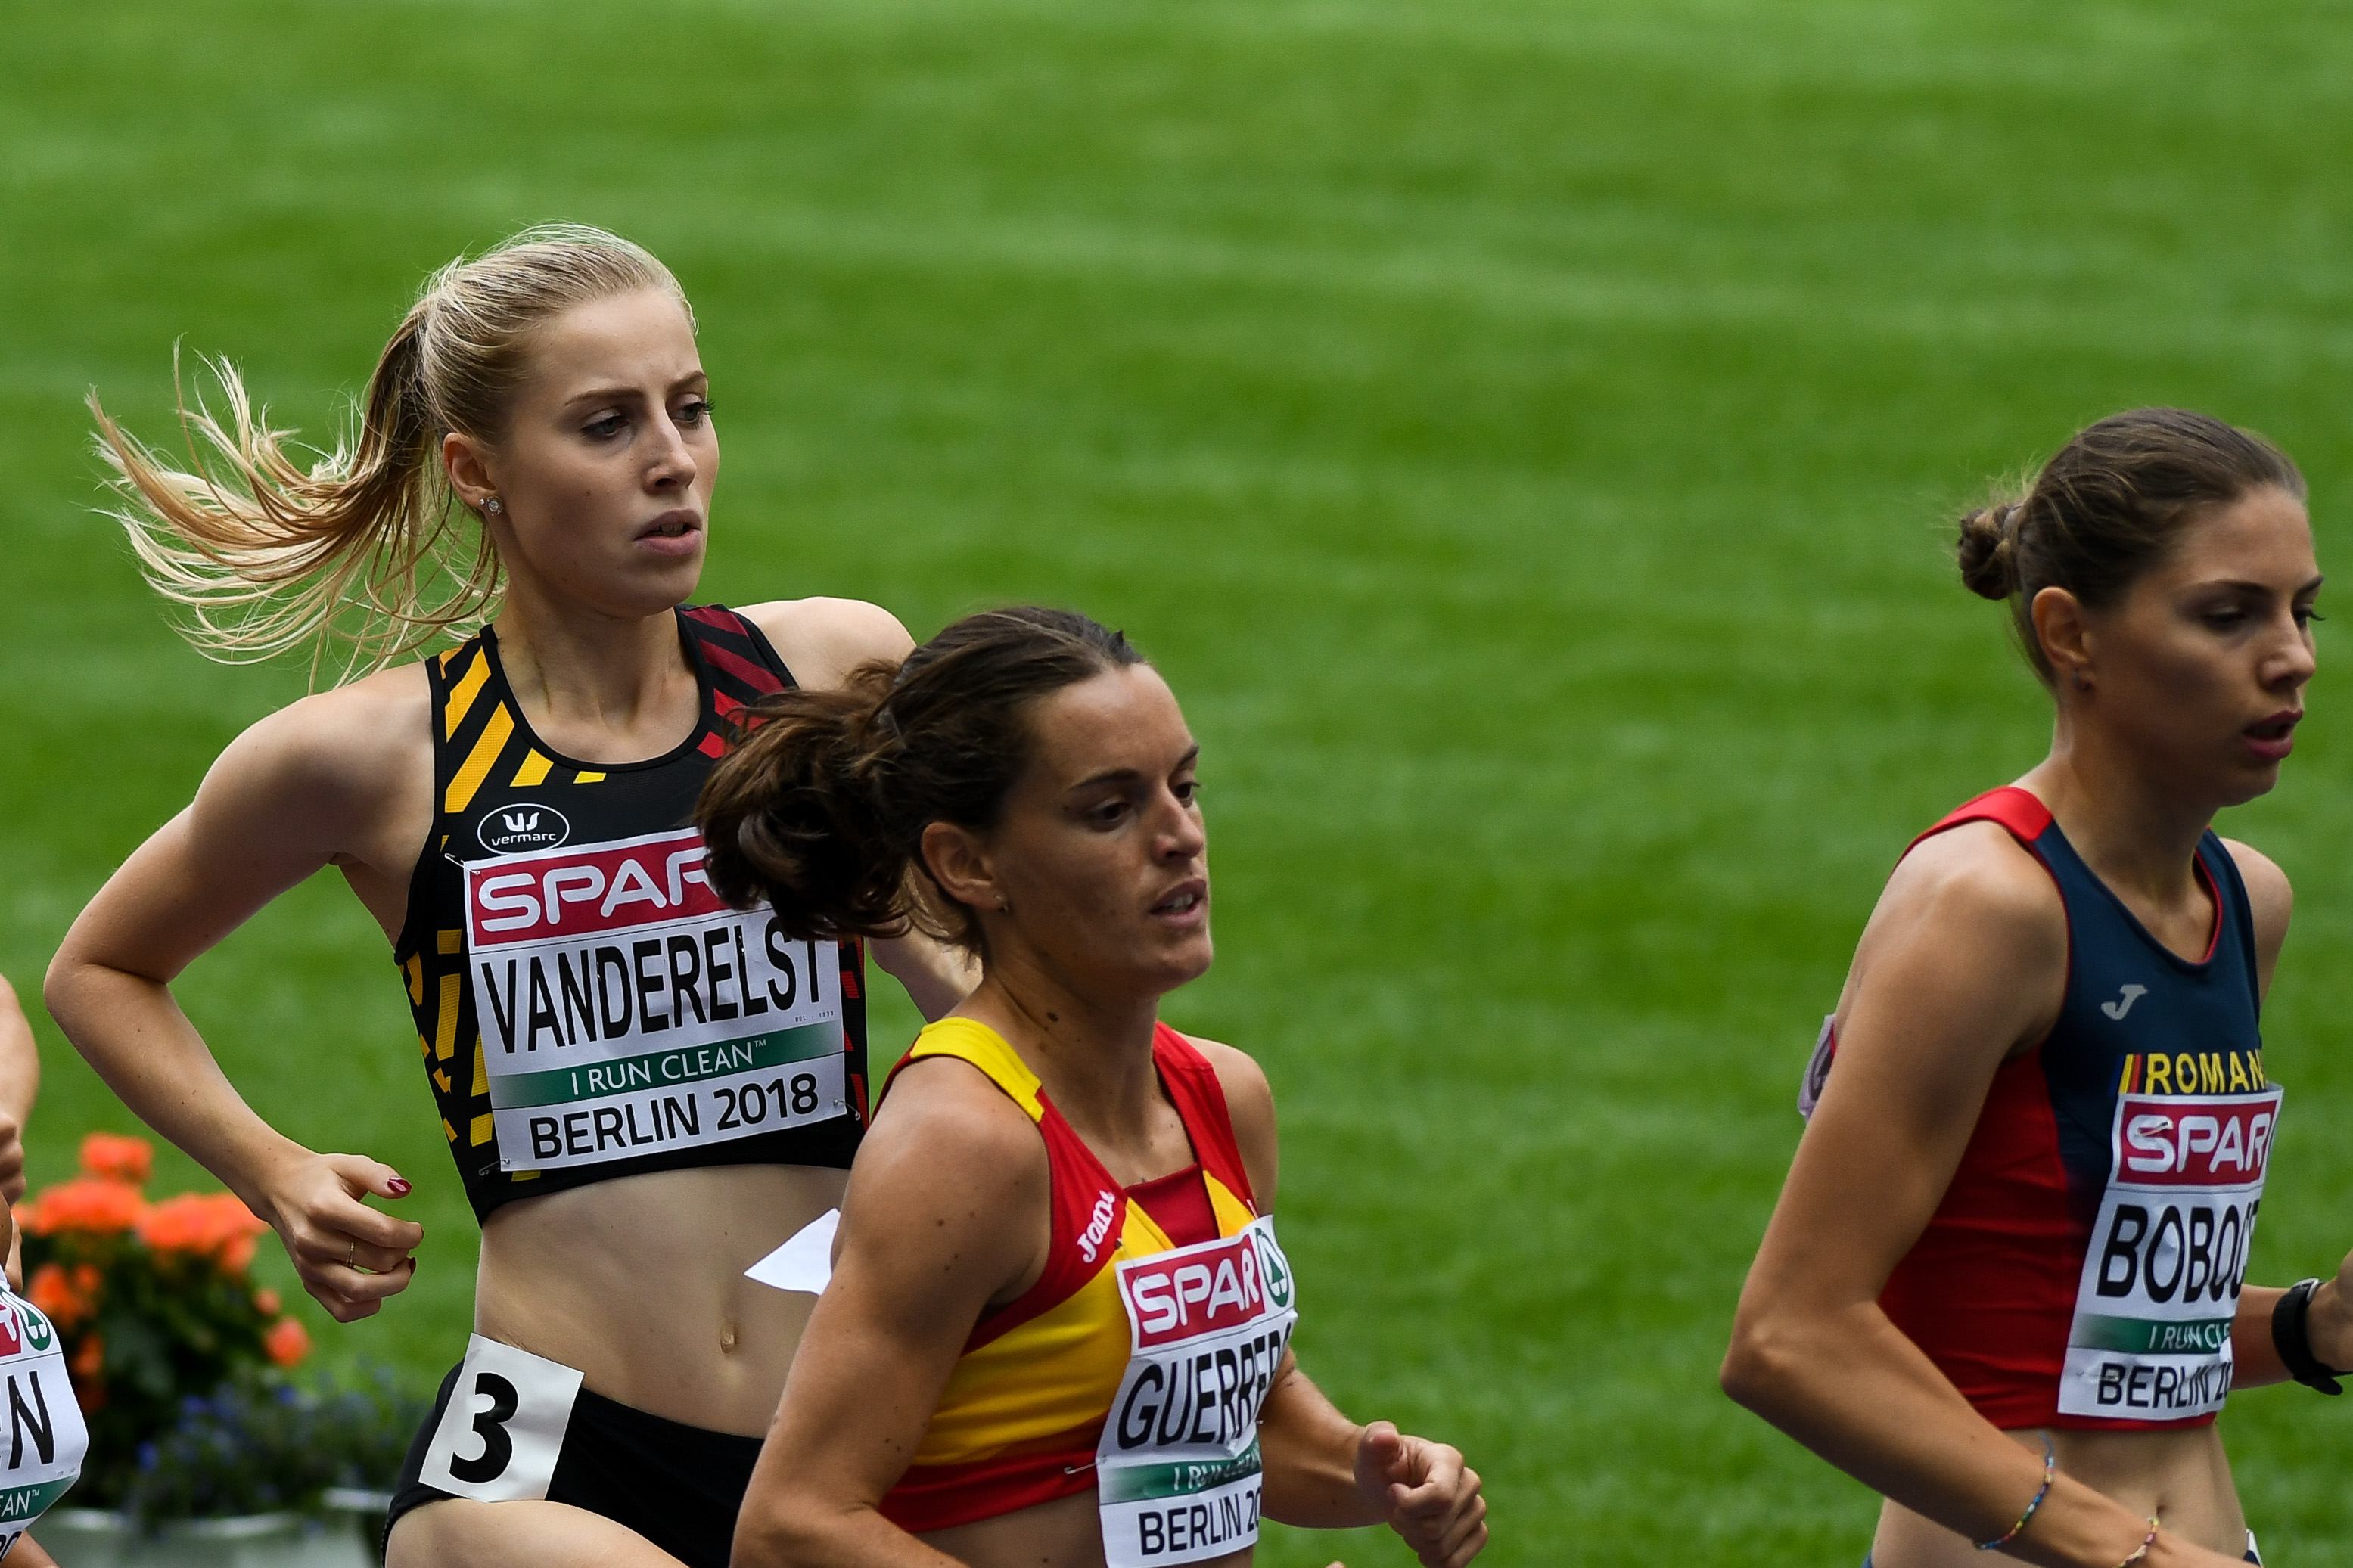 Elise Vanderhelst 1500m Berlijn 2018